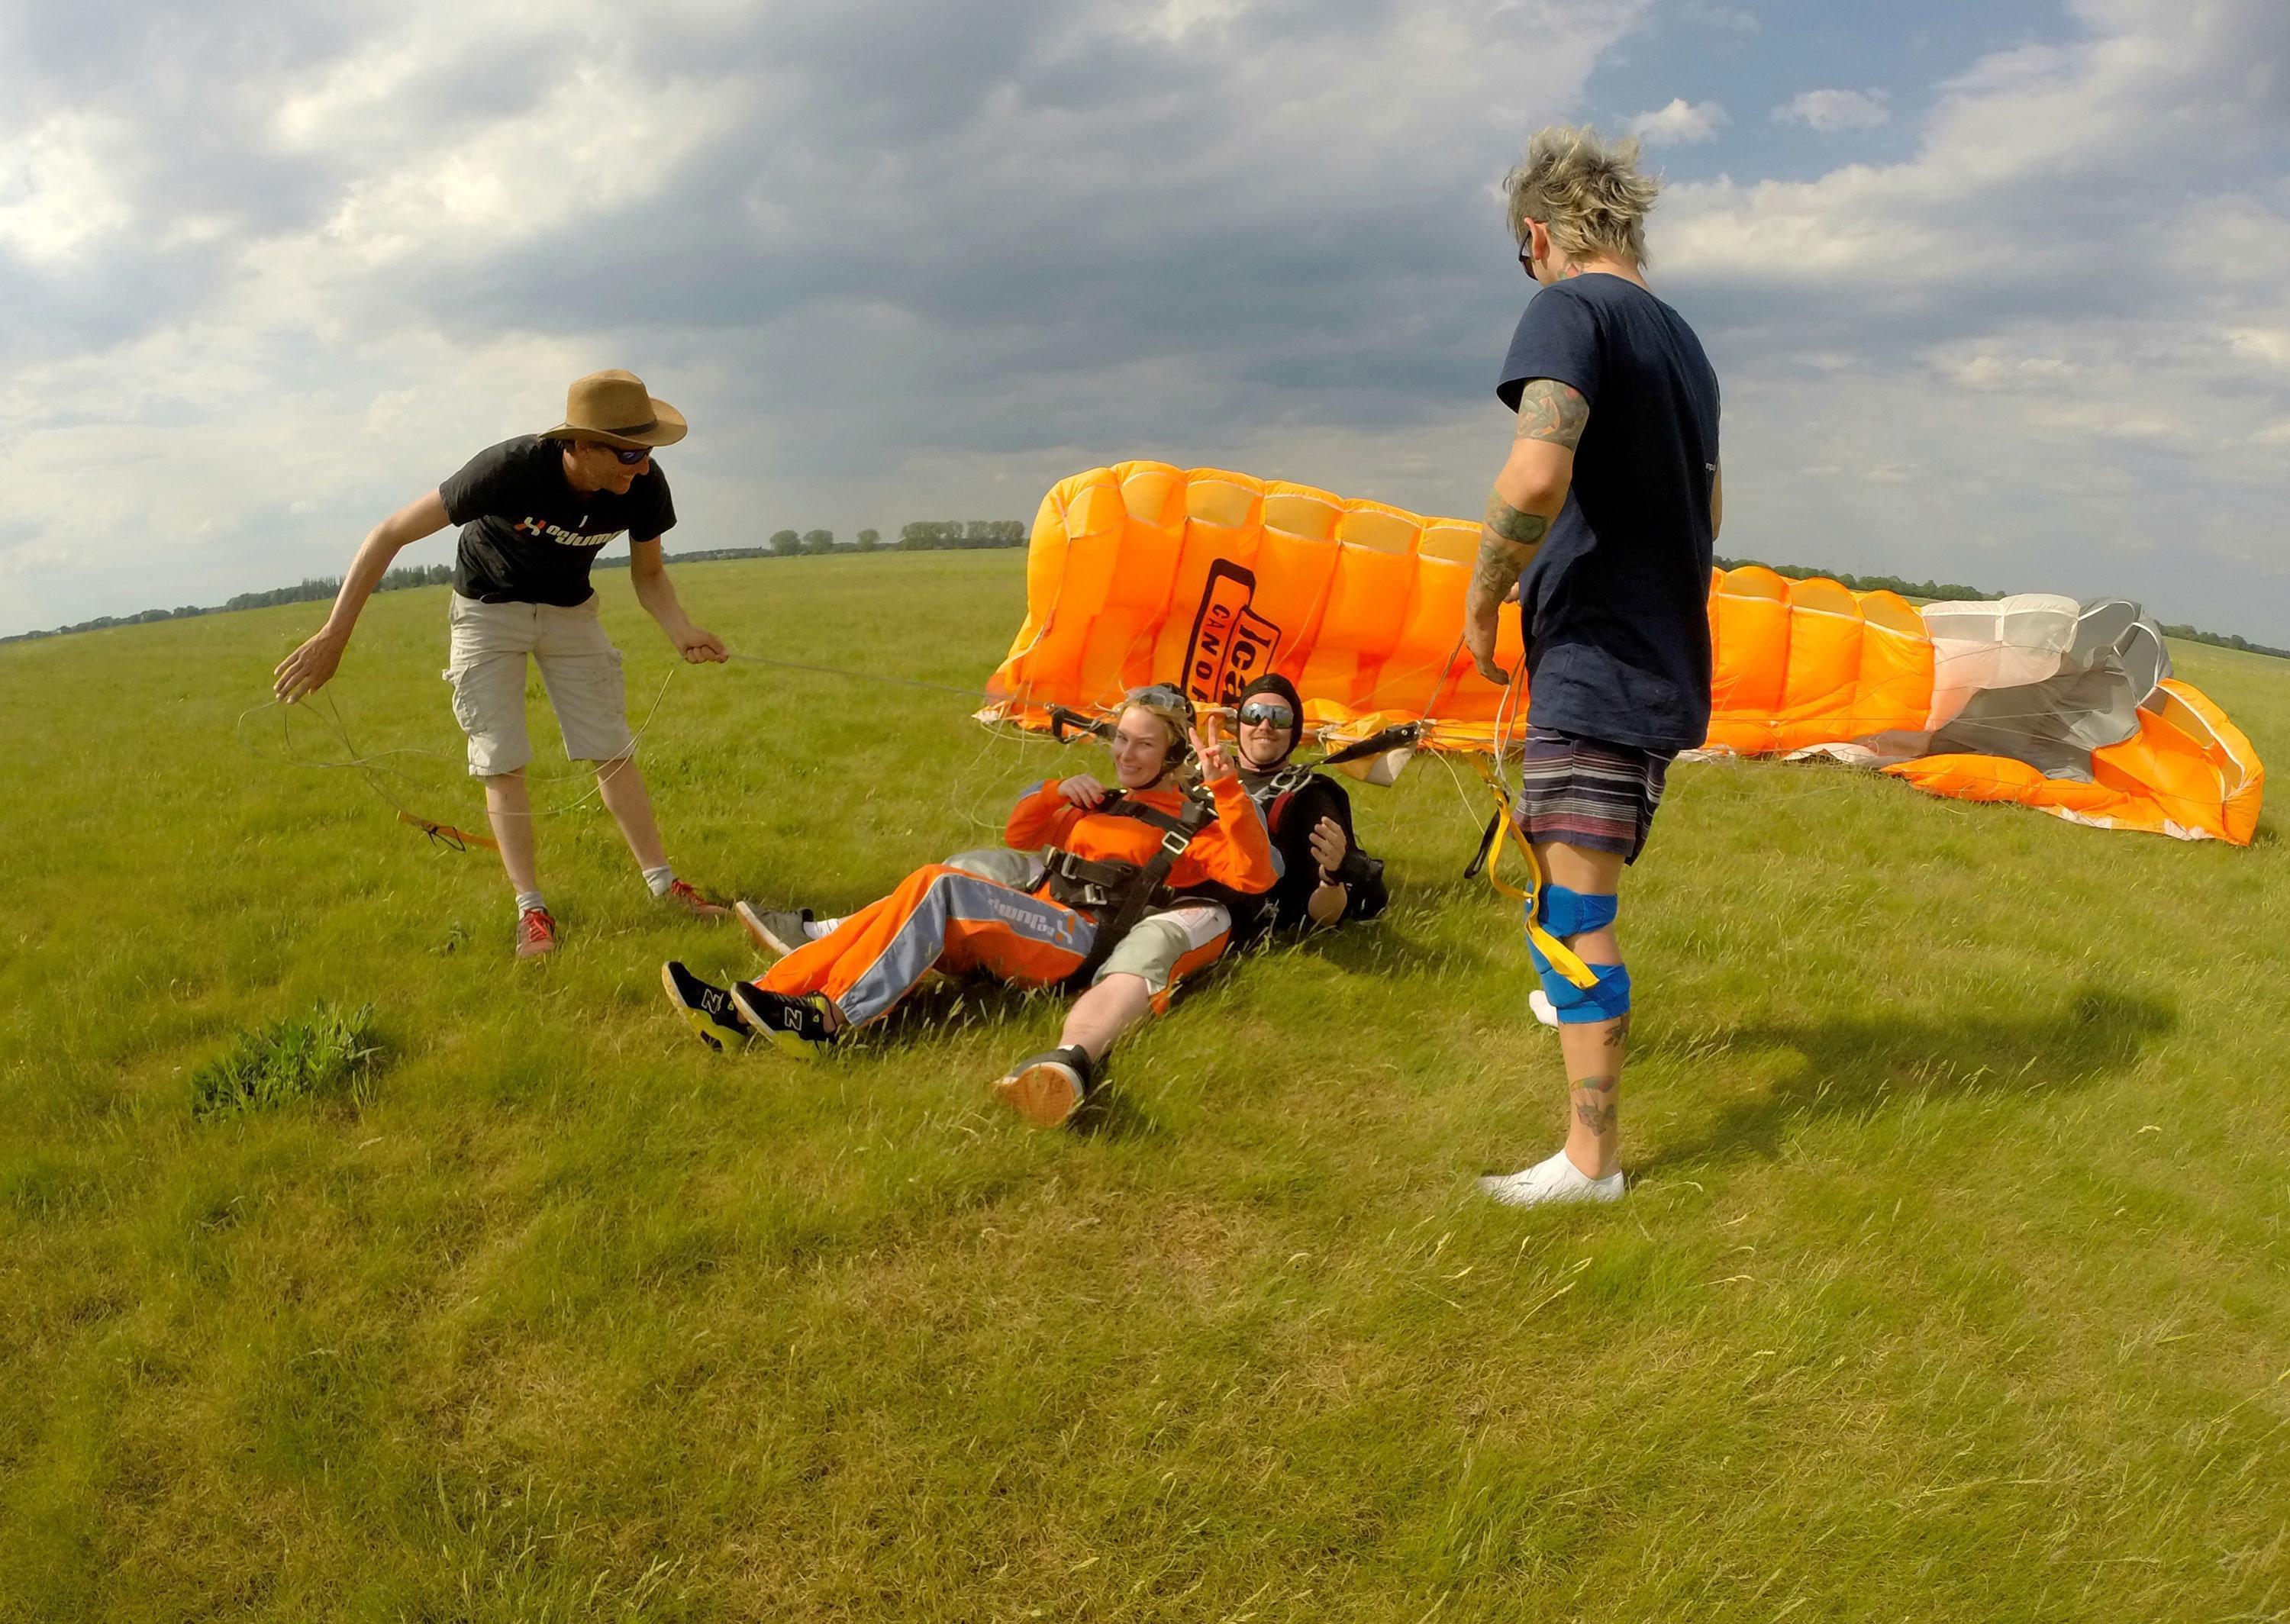 Ölümle yaşam arasında uçmak: Skydiving